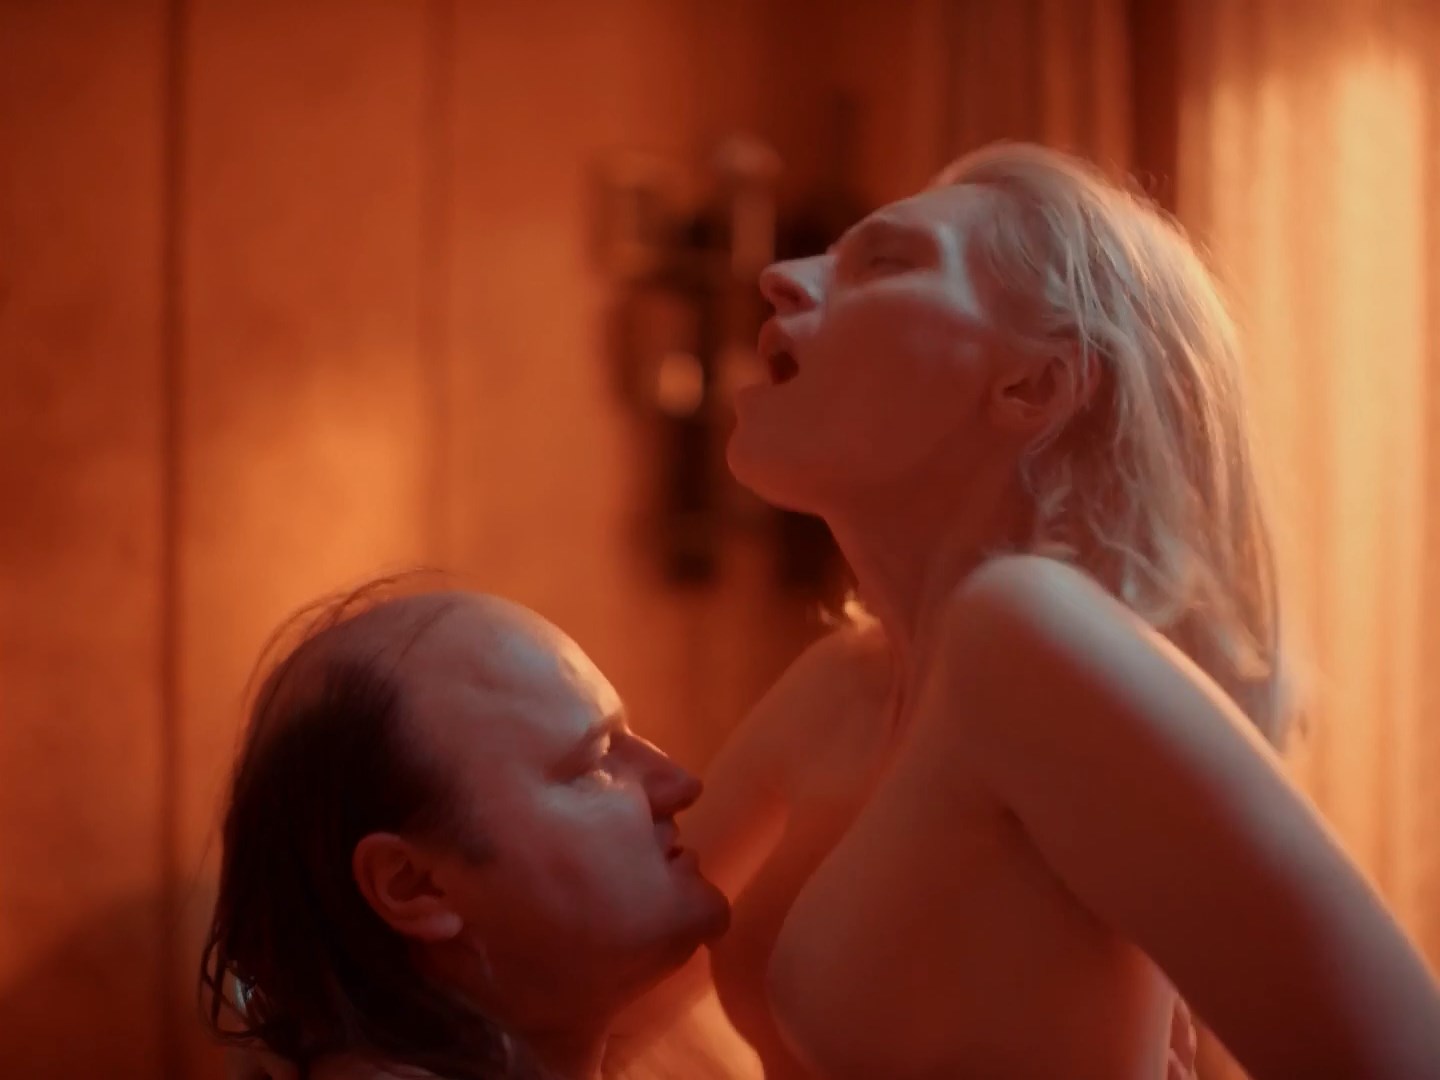 Watch Online - Agata Buzek - Erotica 2022 (2020) HD 1080p